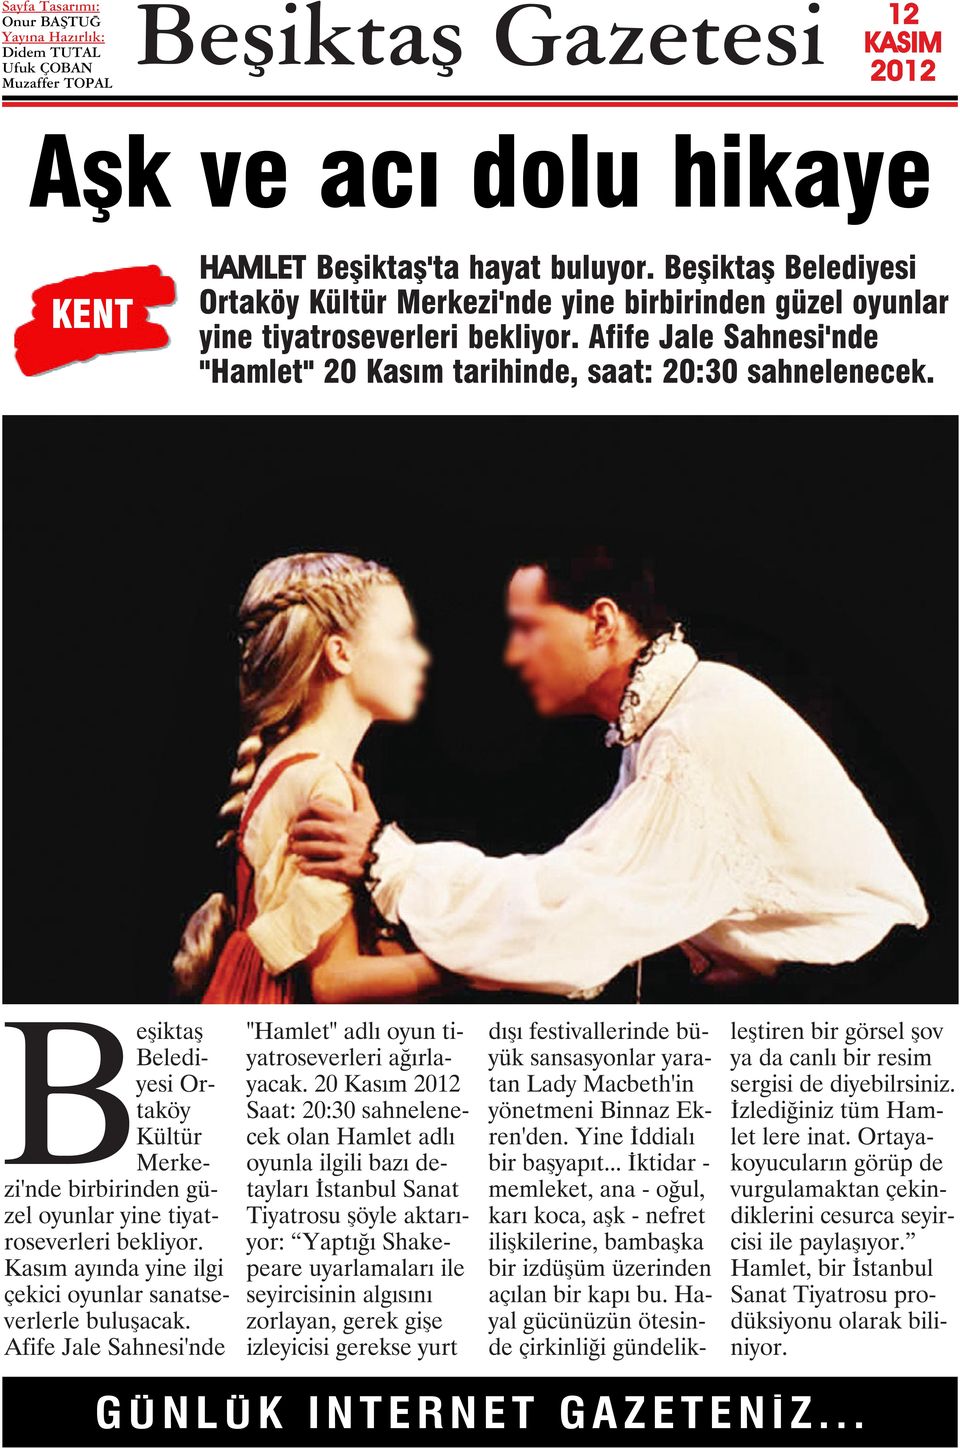 Kasım ayında yine ilgi çekici oyunlar sanatseverlerle buluşacak. Afife Jale Sahnesi'nde "Hamlet" adlı oyun tiyatroseverleri ağırlayacak.